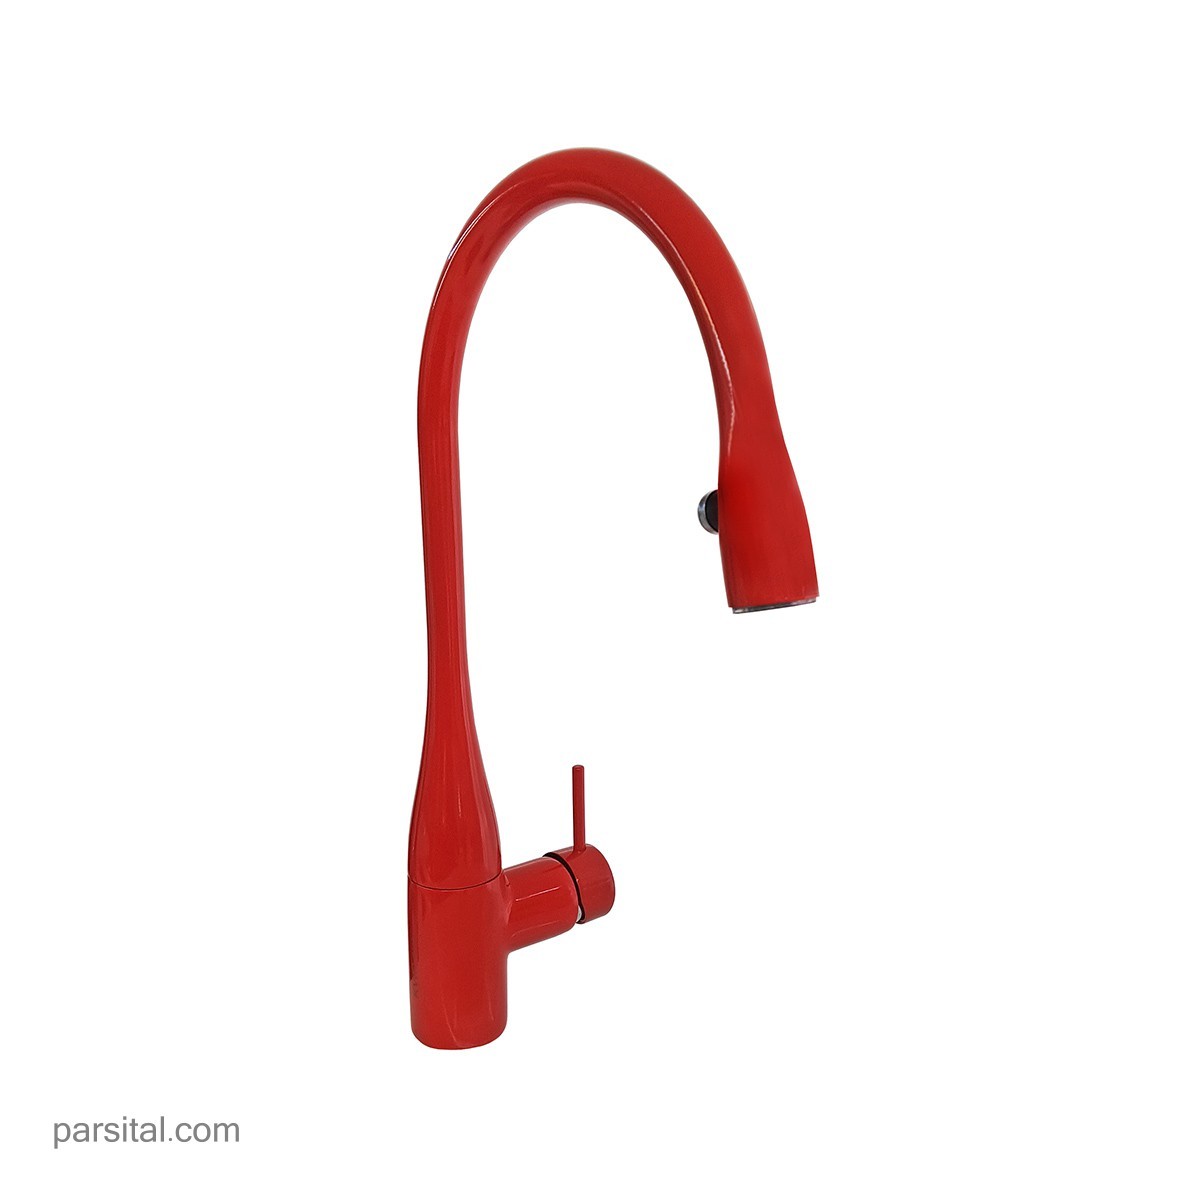 شیر آشپزخانه شلنگدار - چراغدار مدل ایو قرمز کی دبلیوسی